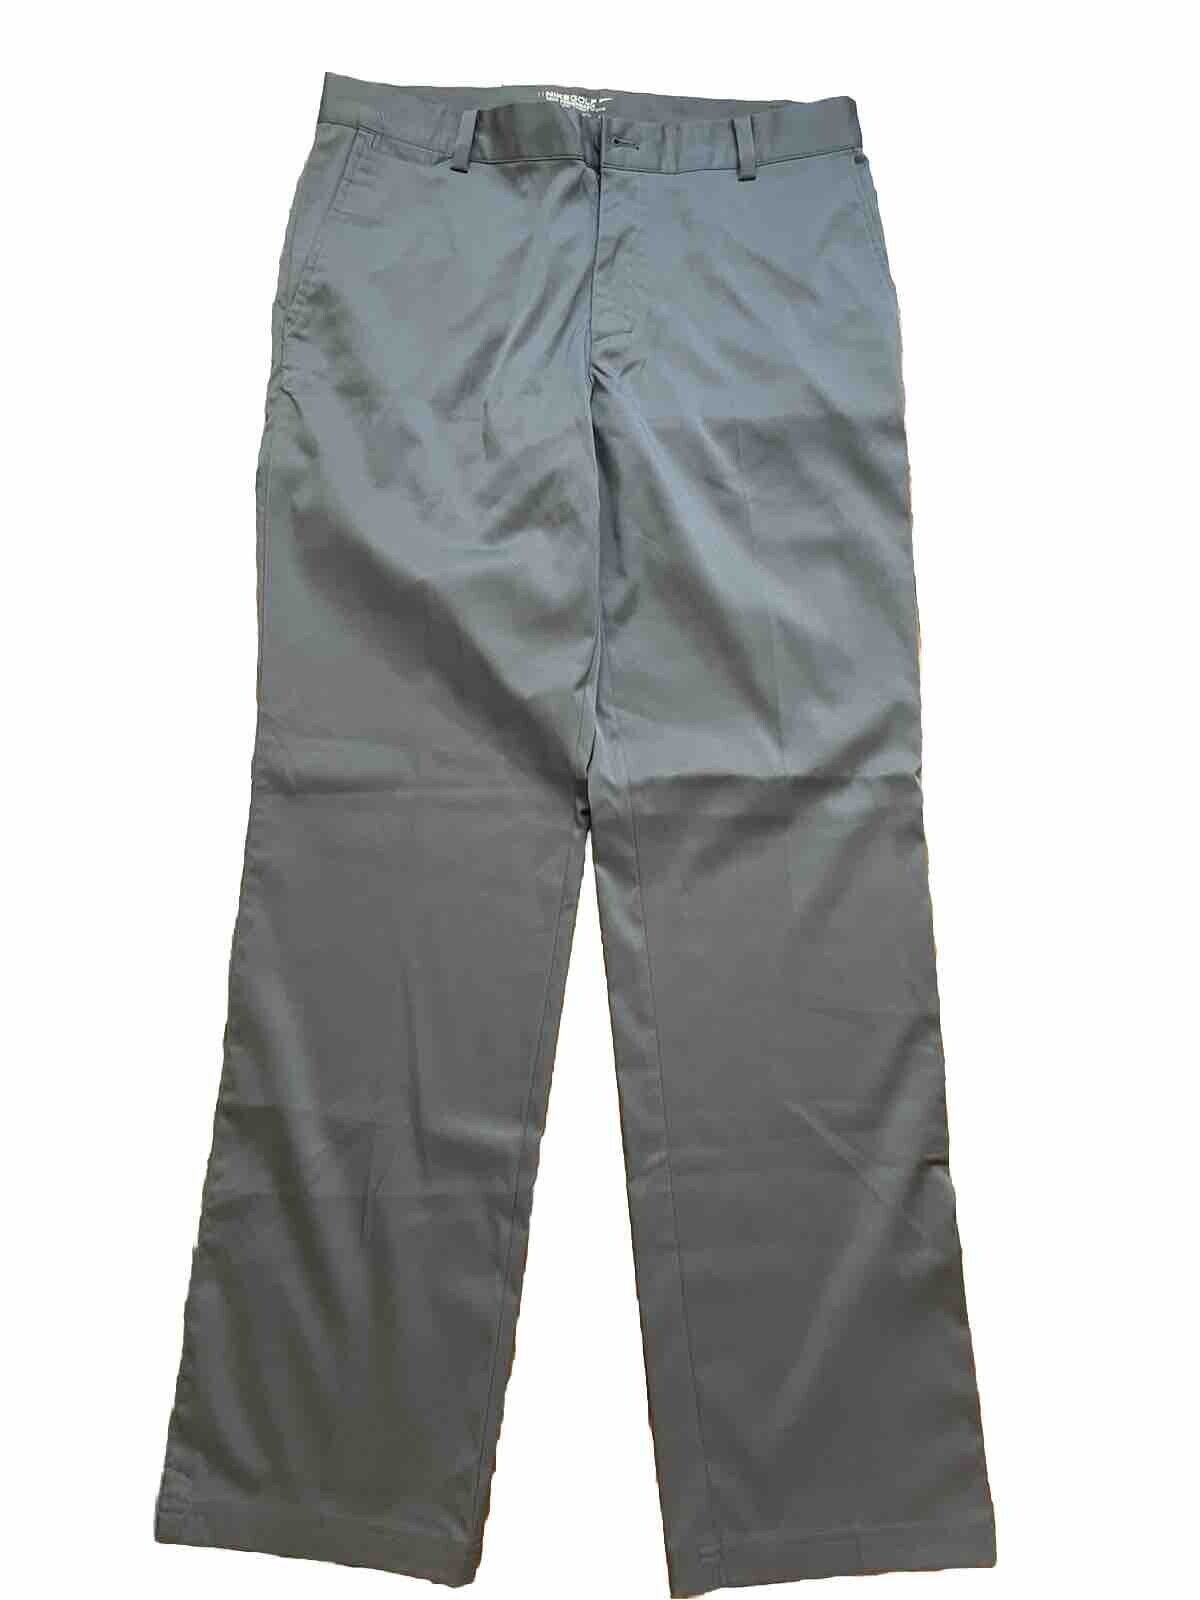 Nike Dri-Fit Golf Pants - Dark Gray - Men’s Size 32x32